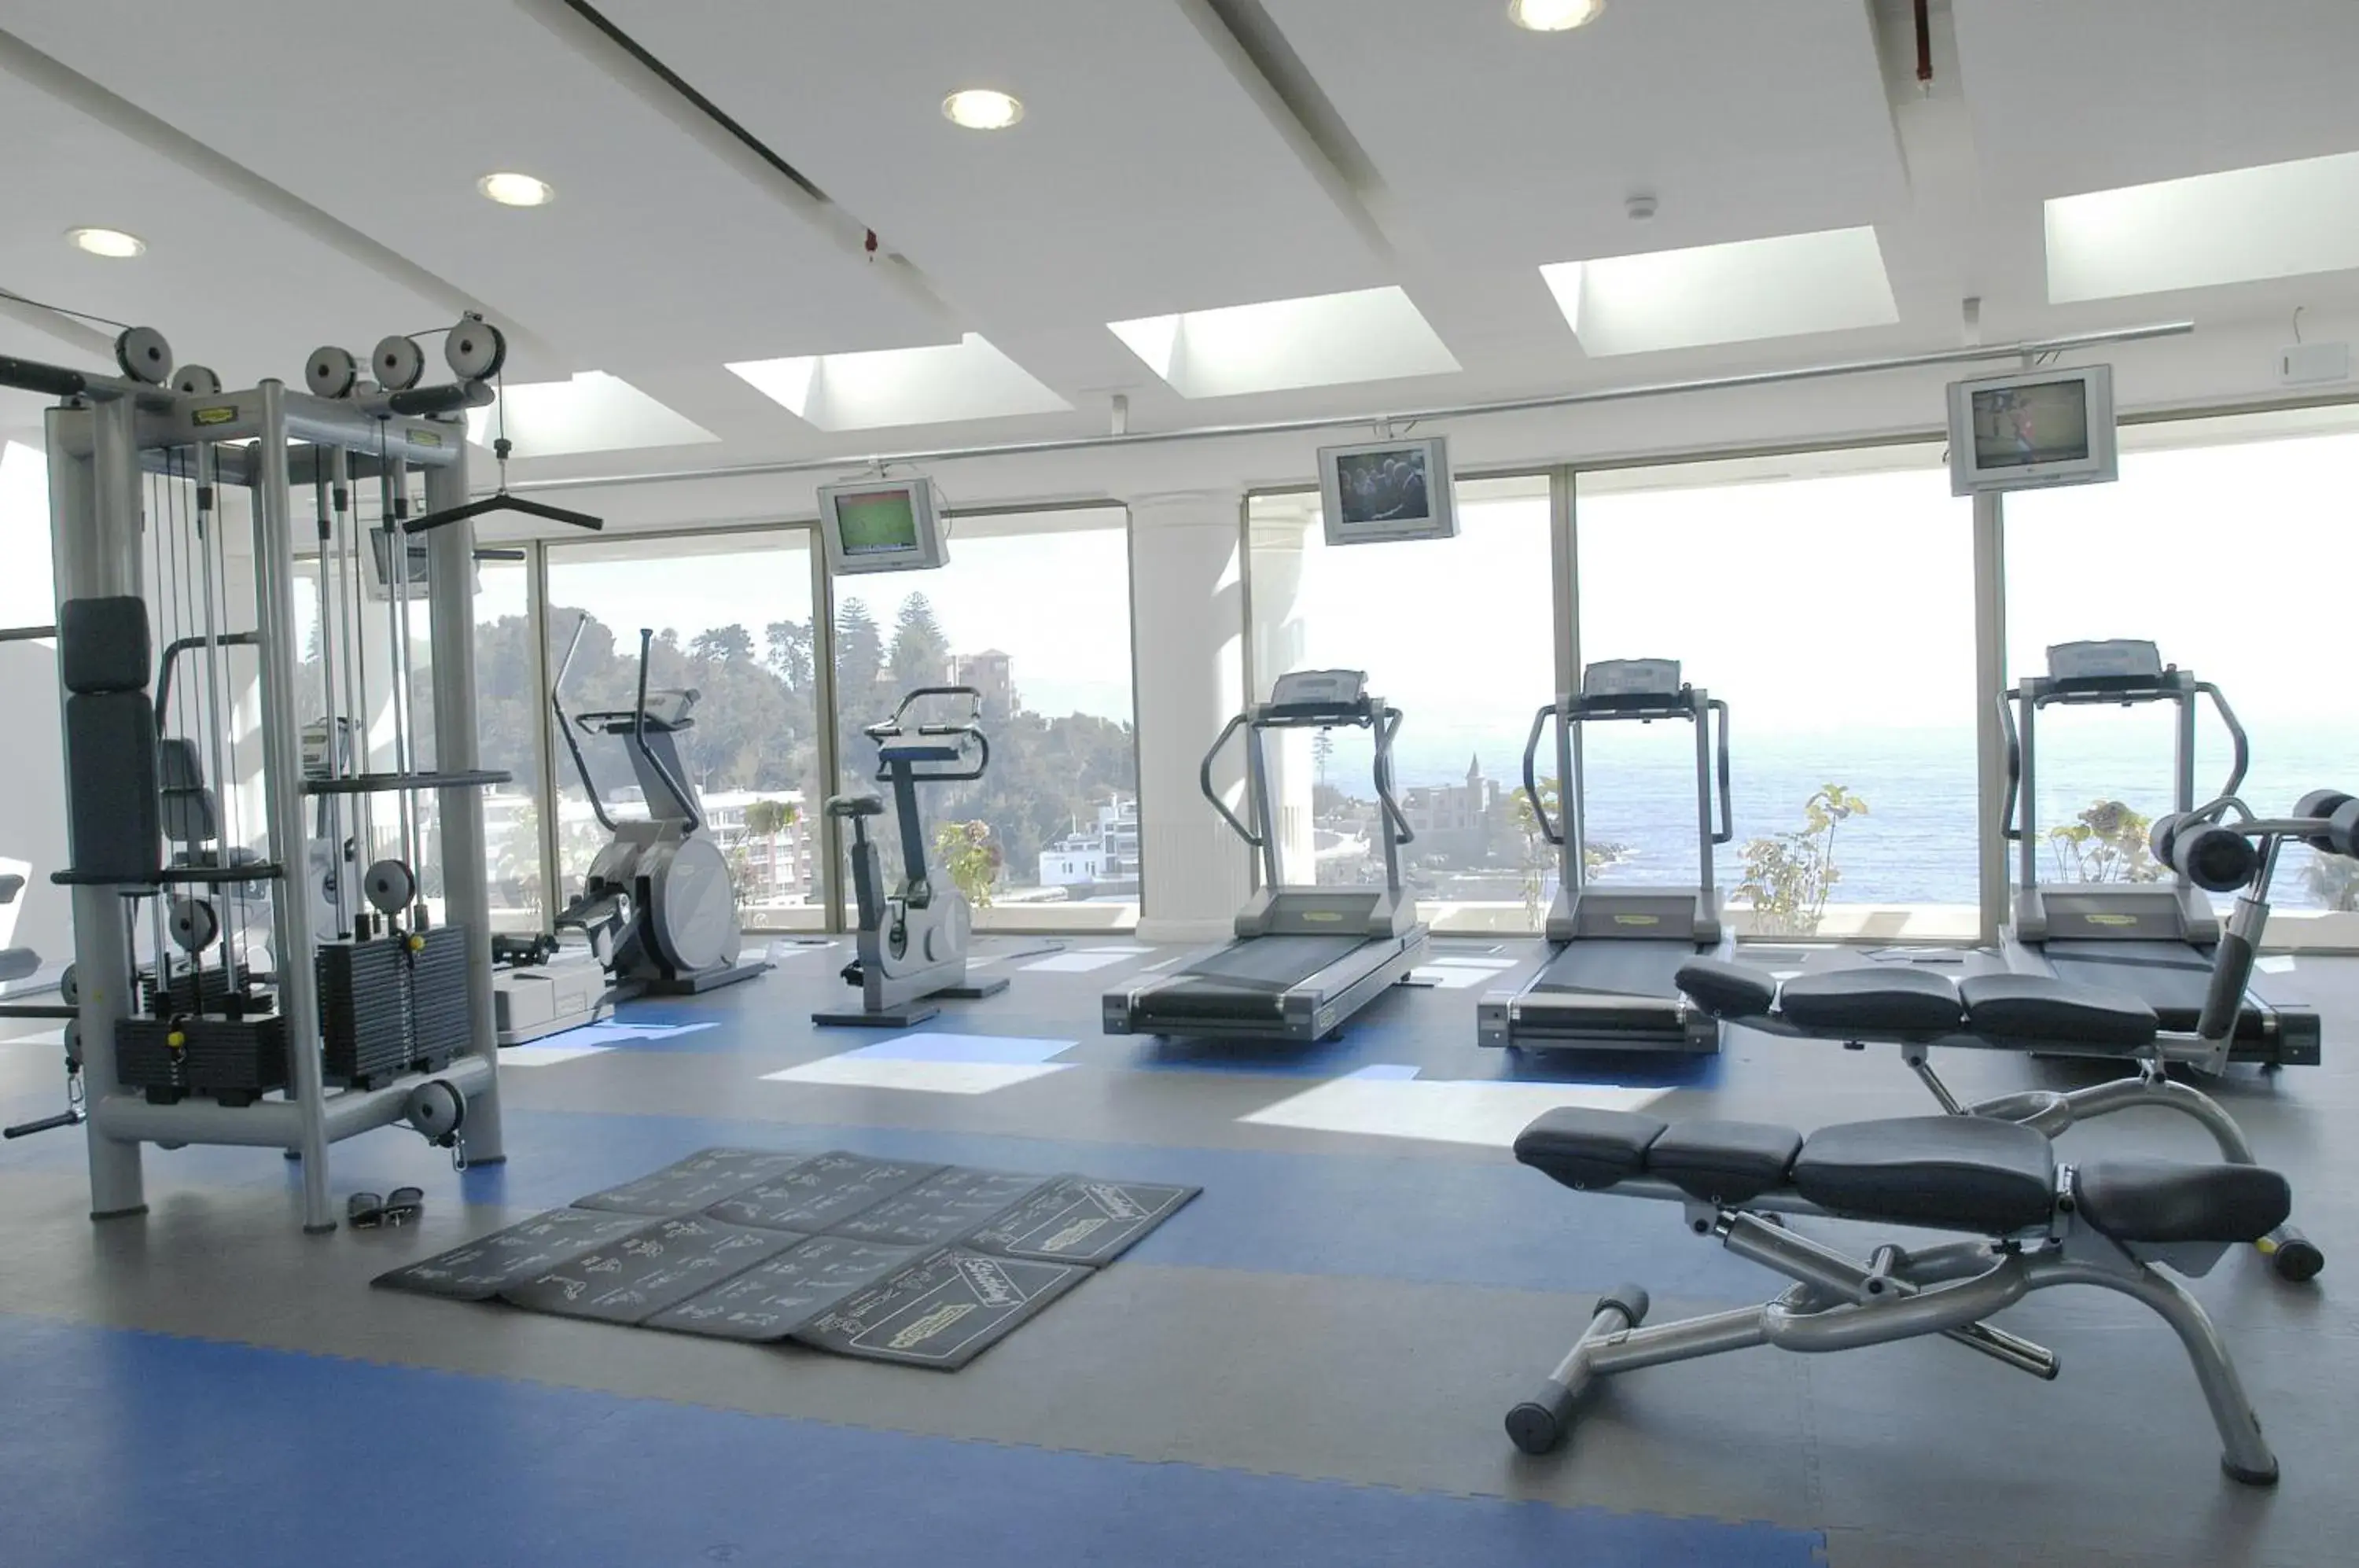 Fitness centre/facilities, Fitness Center/Facilities in Enjoy Viña Del Mar